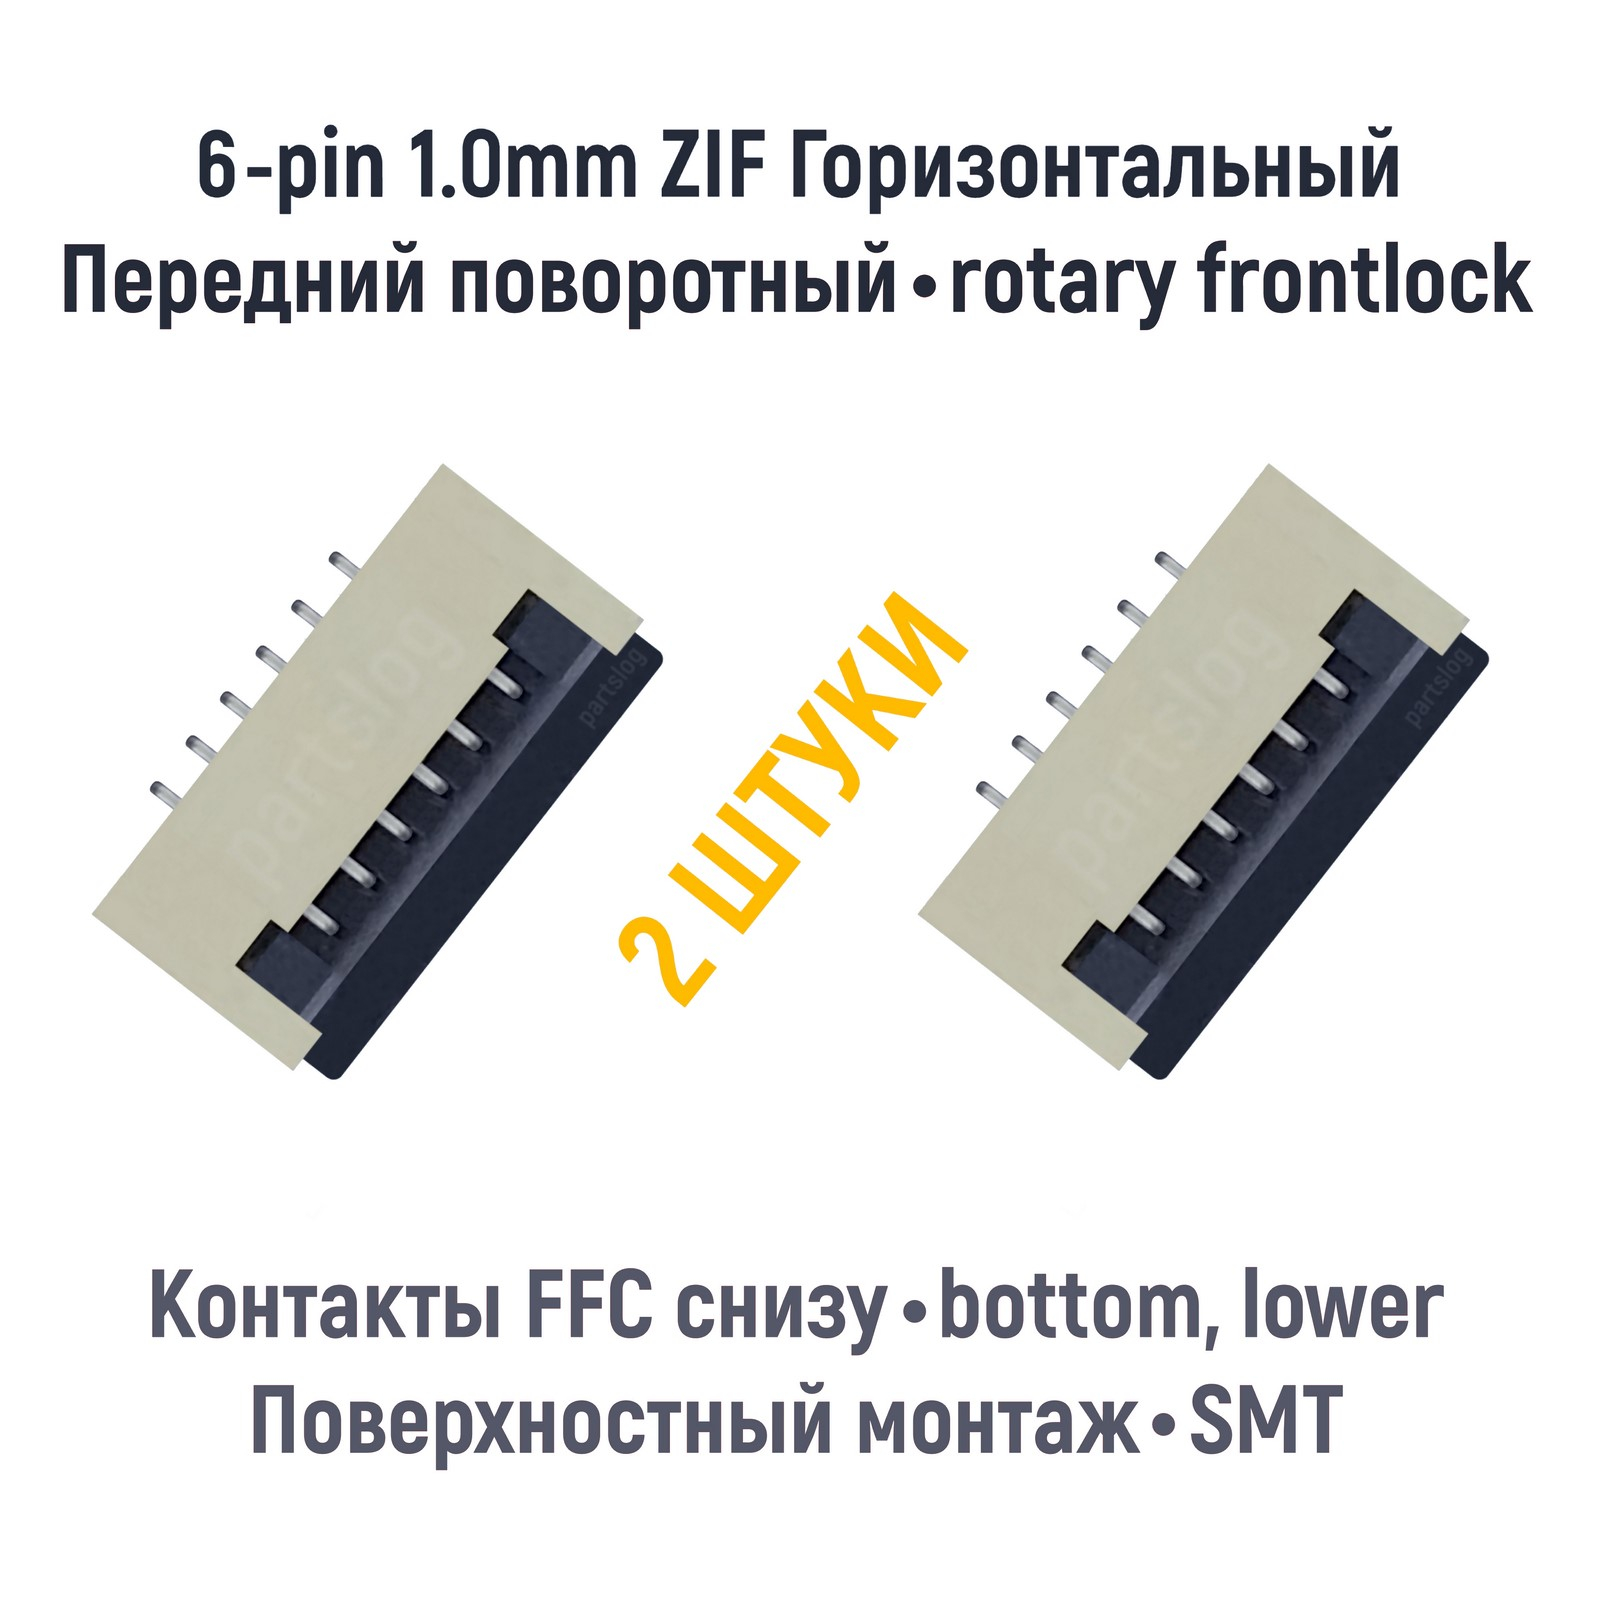 Коннектор OEM для FFC FPC 6-pin шаг 1.0mm ZIF